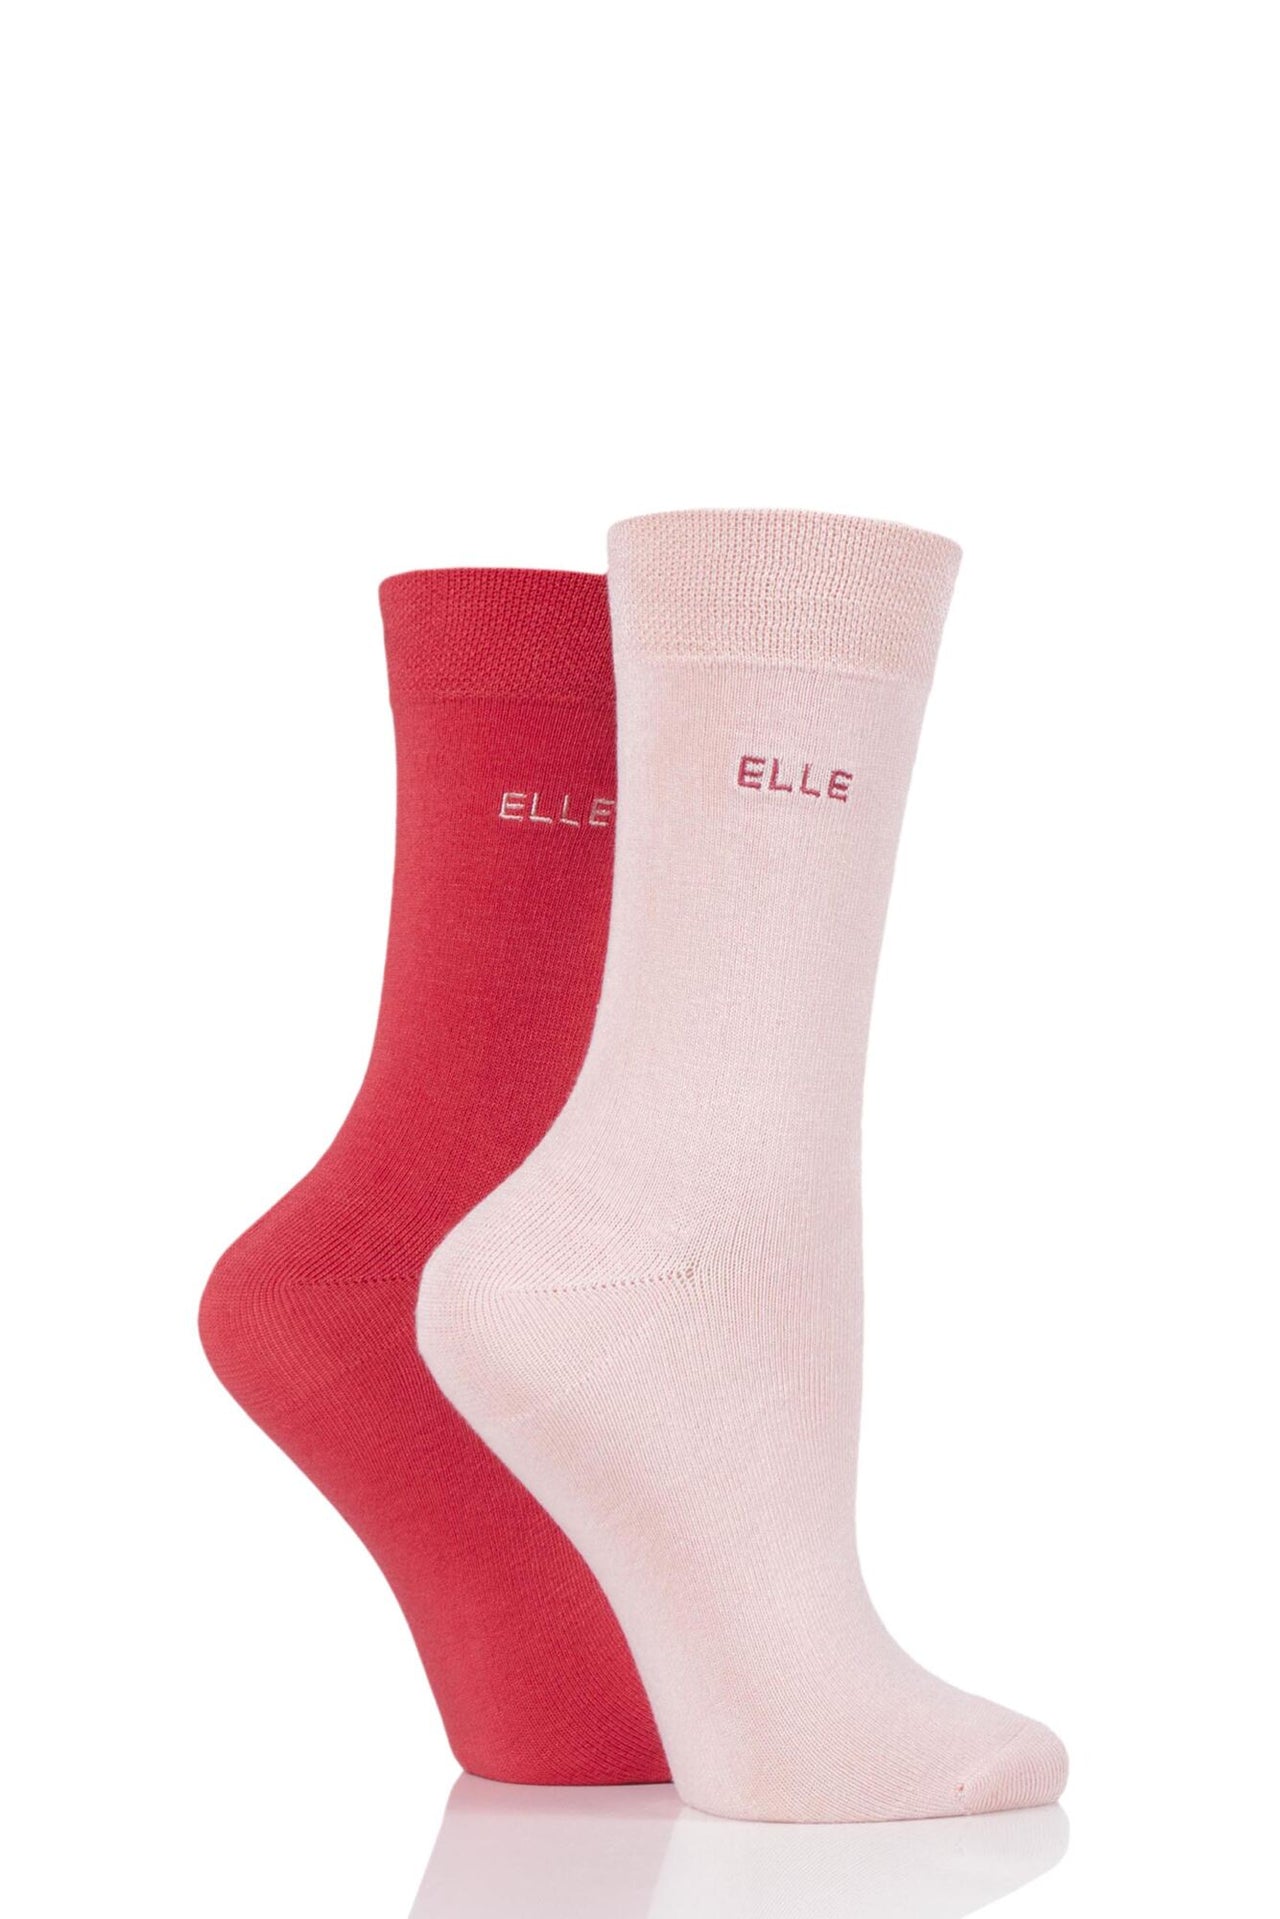 Elle Bamboo Socks - Strawberry Sorbet